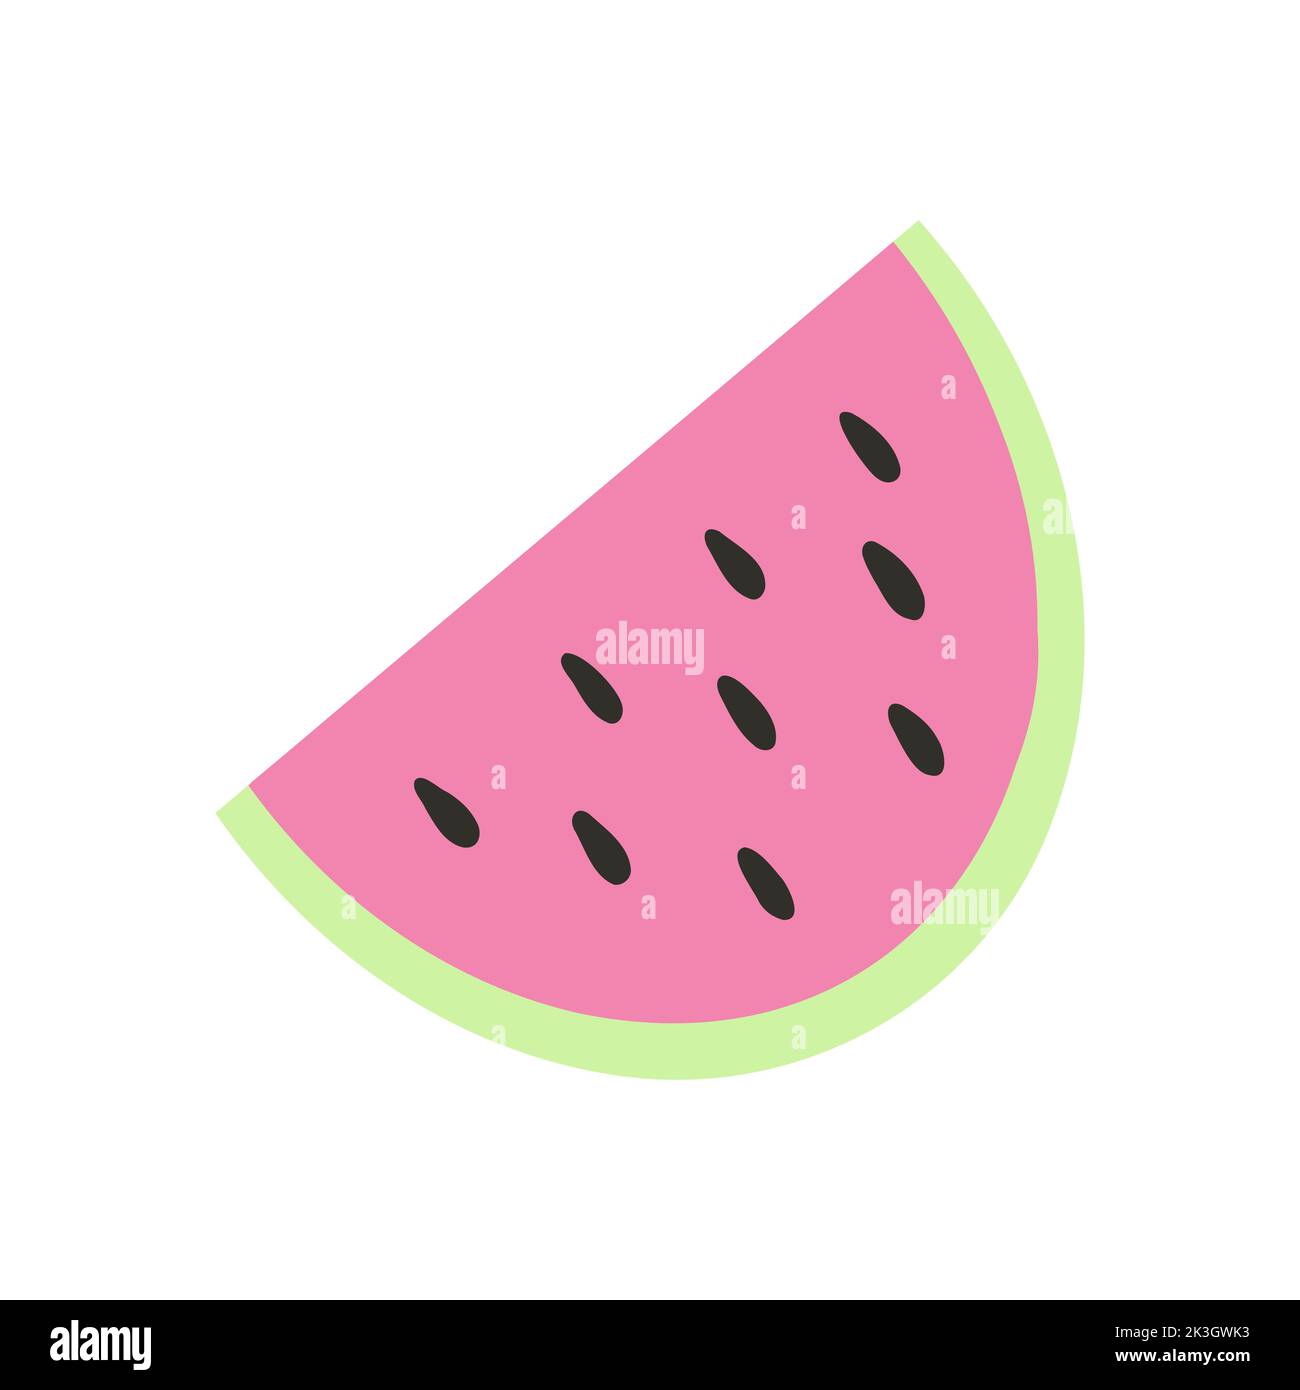 Cocomero in cartoon stile piatto. Illustrazione vettoriale di frutta fresca estiva, anguria affettata, adesivo girly pop. Illustrazione Vettoriale